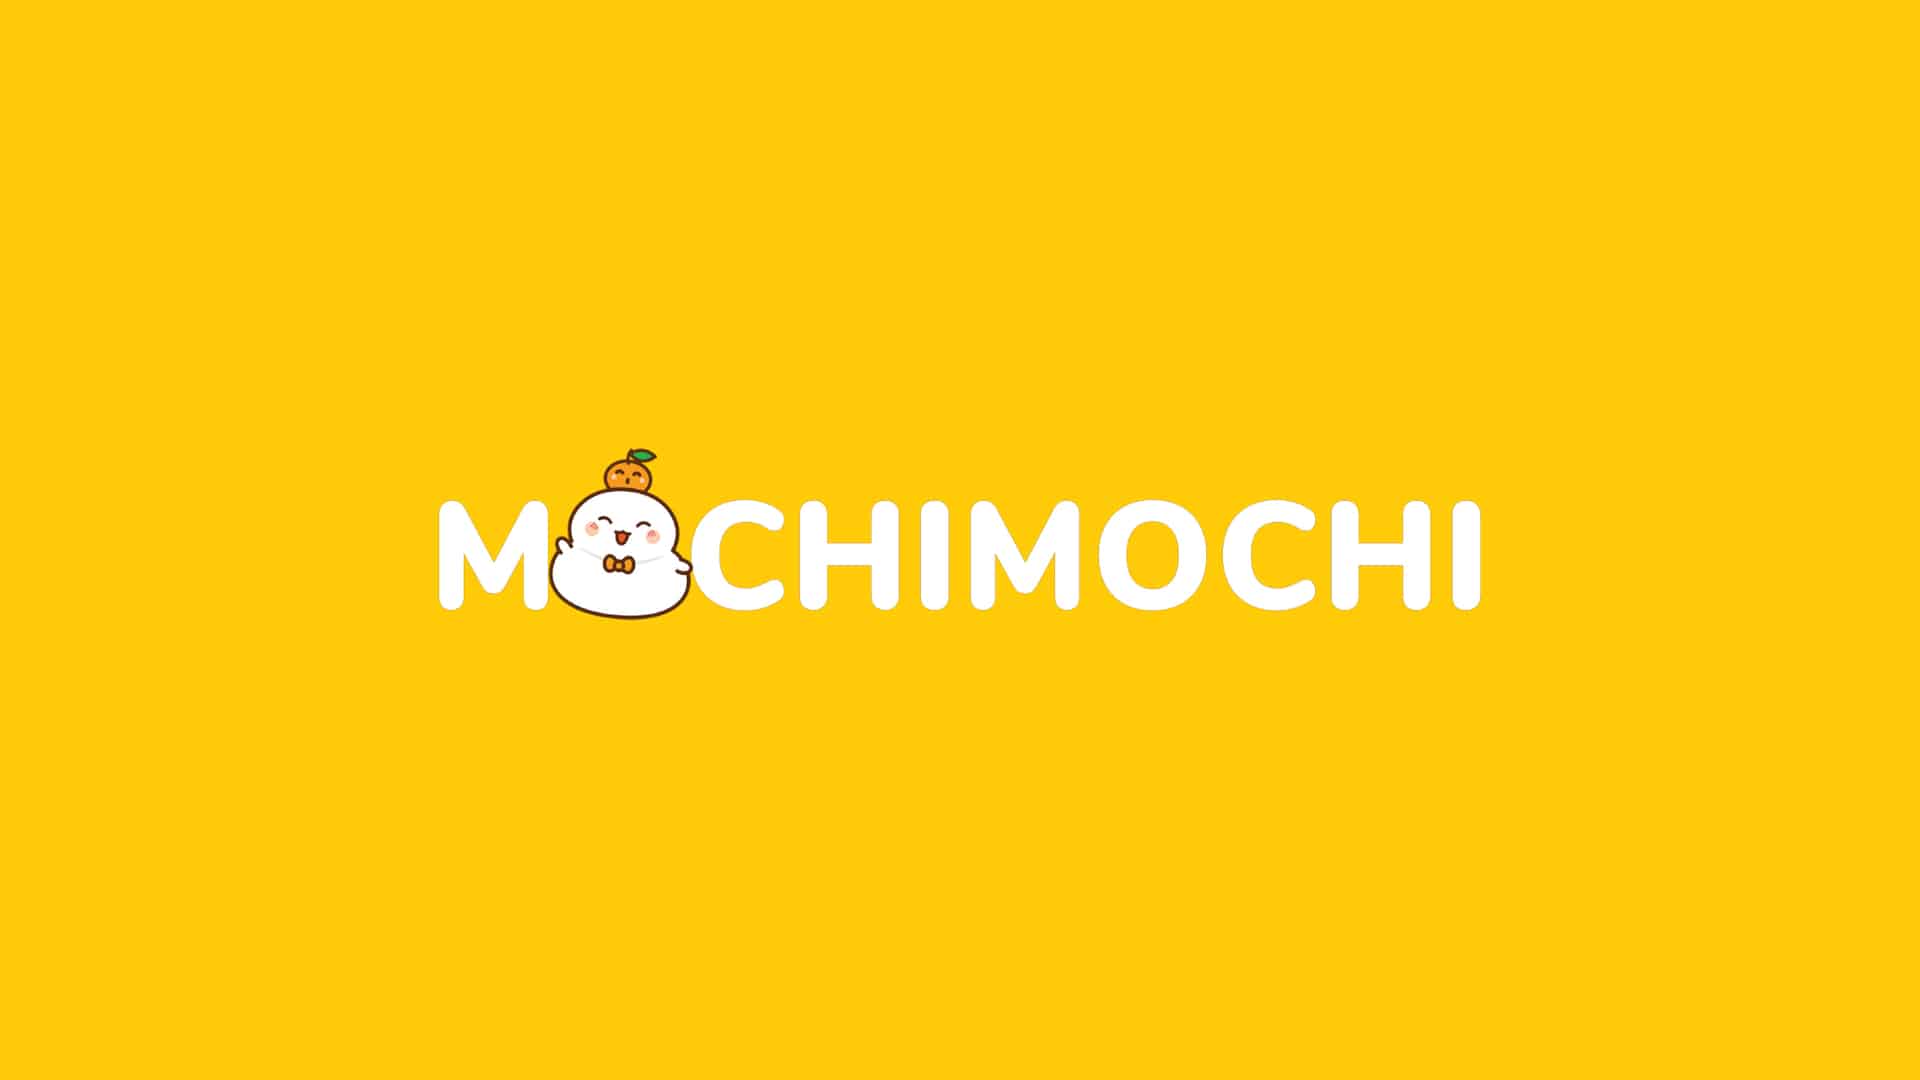 Mochimochi